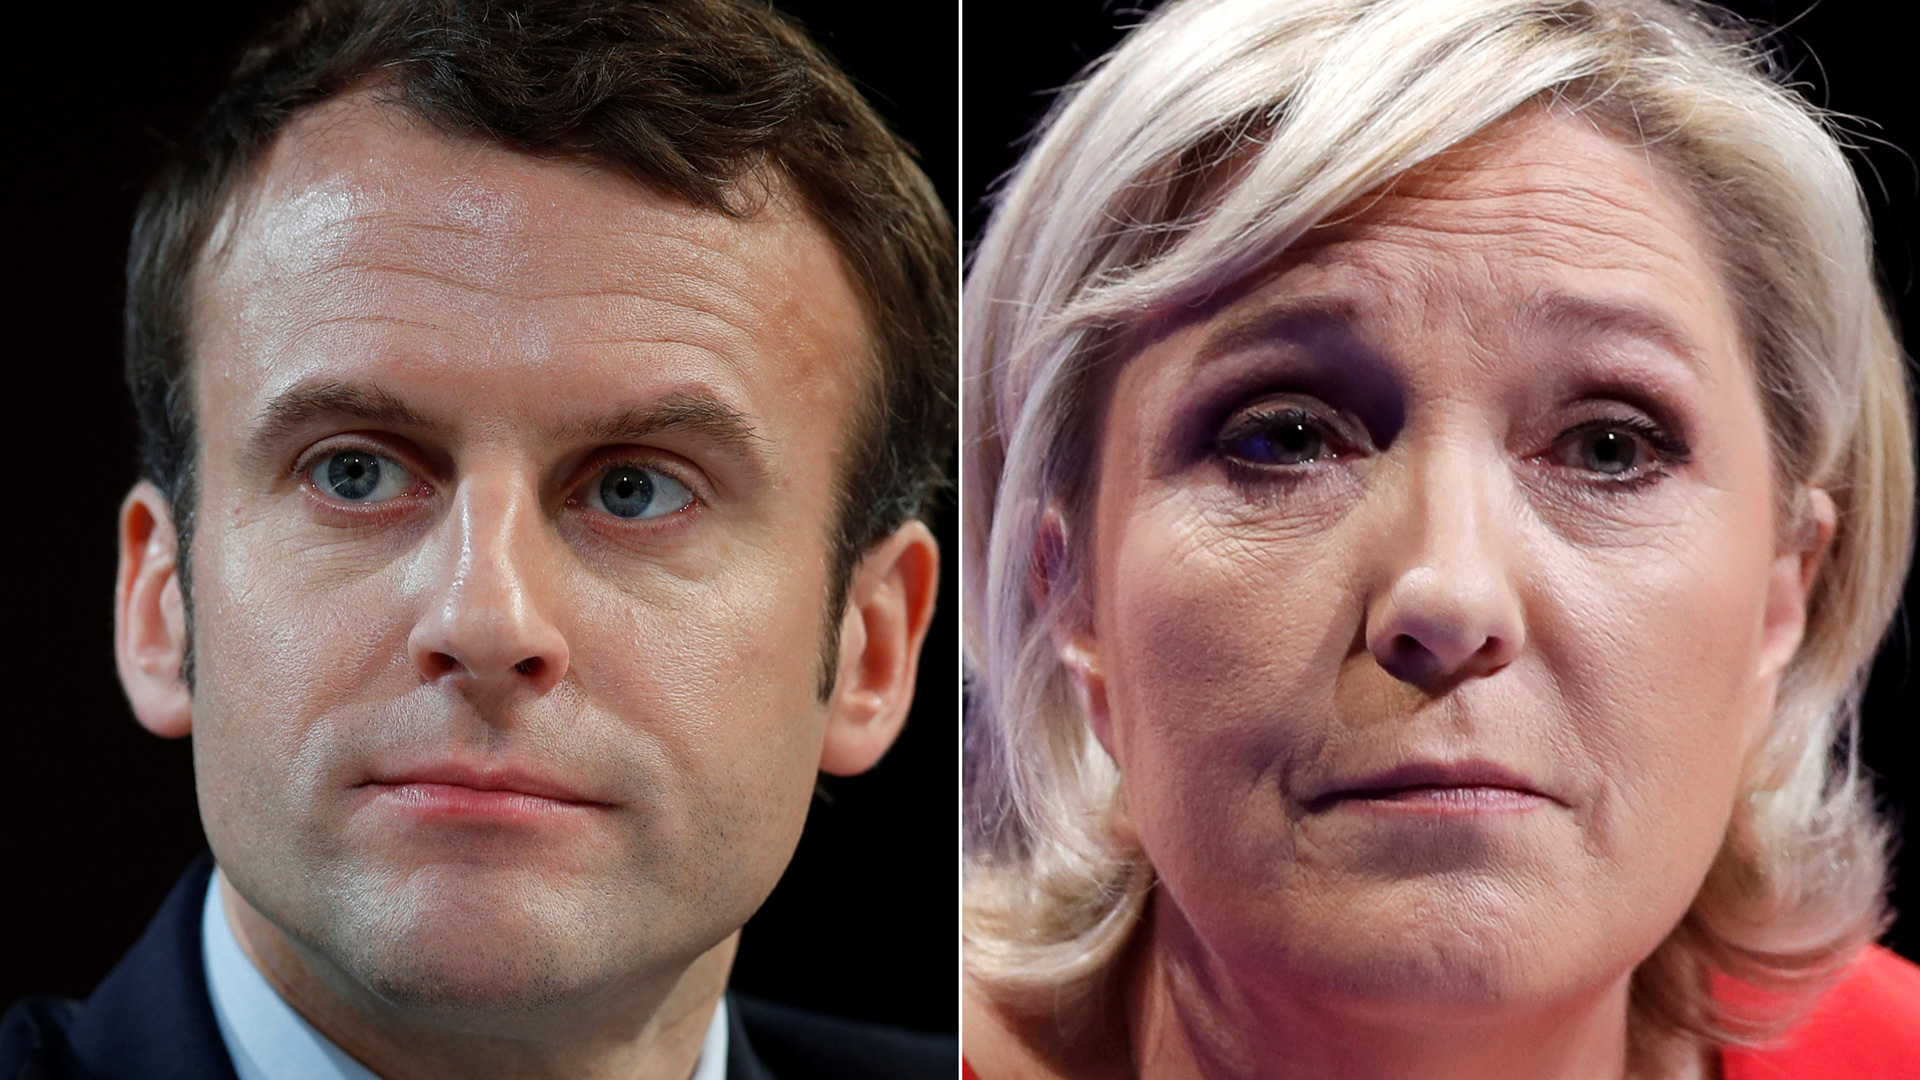 ¿Quiénes son Emmanuel Macron y Marine Le Pen?